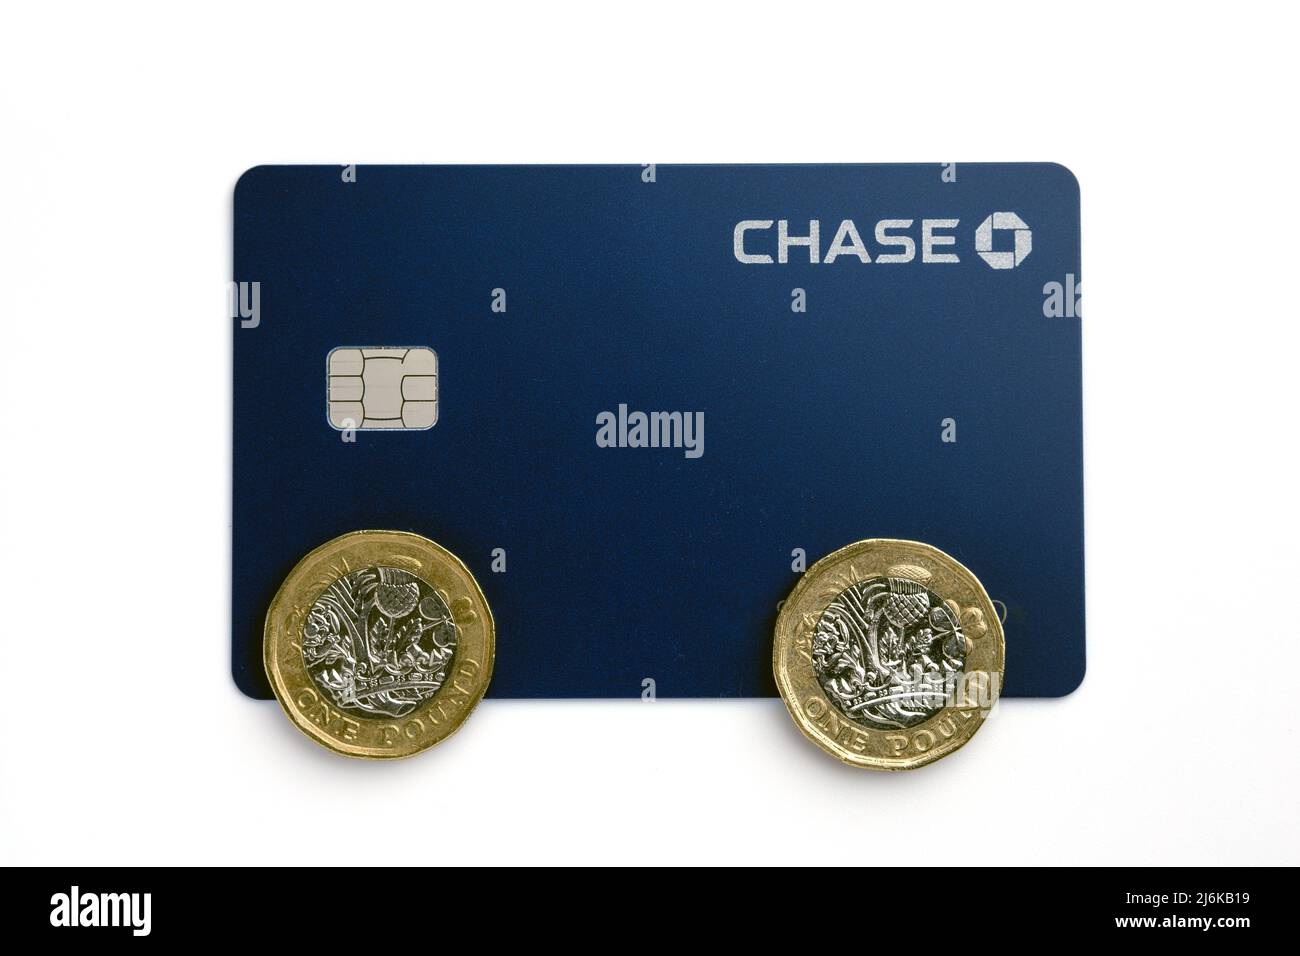 Chase Bank UK Debitkarte mit Pfund-Münzen auf der Oberseite. Die neue rein digitale Bank wird in Großbritannien von JP Morgan ins Leben gerufen. Stafford, Großbritannien, 28. April 2022 Stockfoto